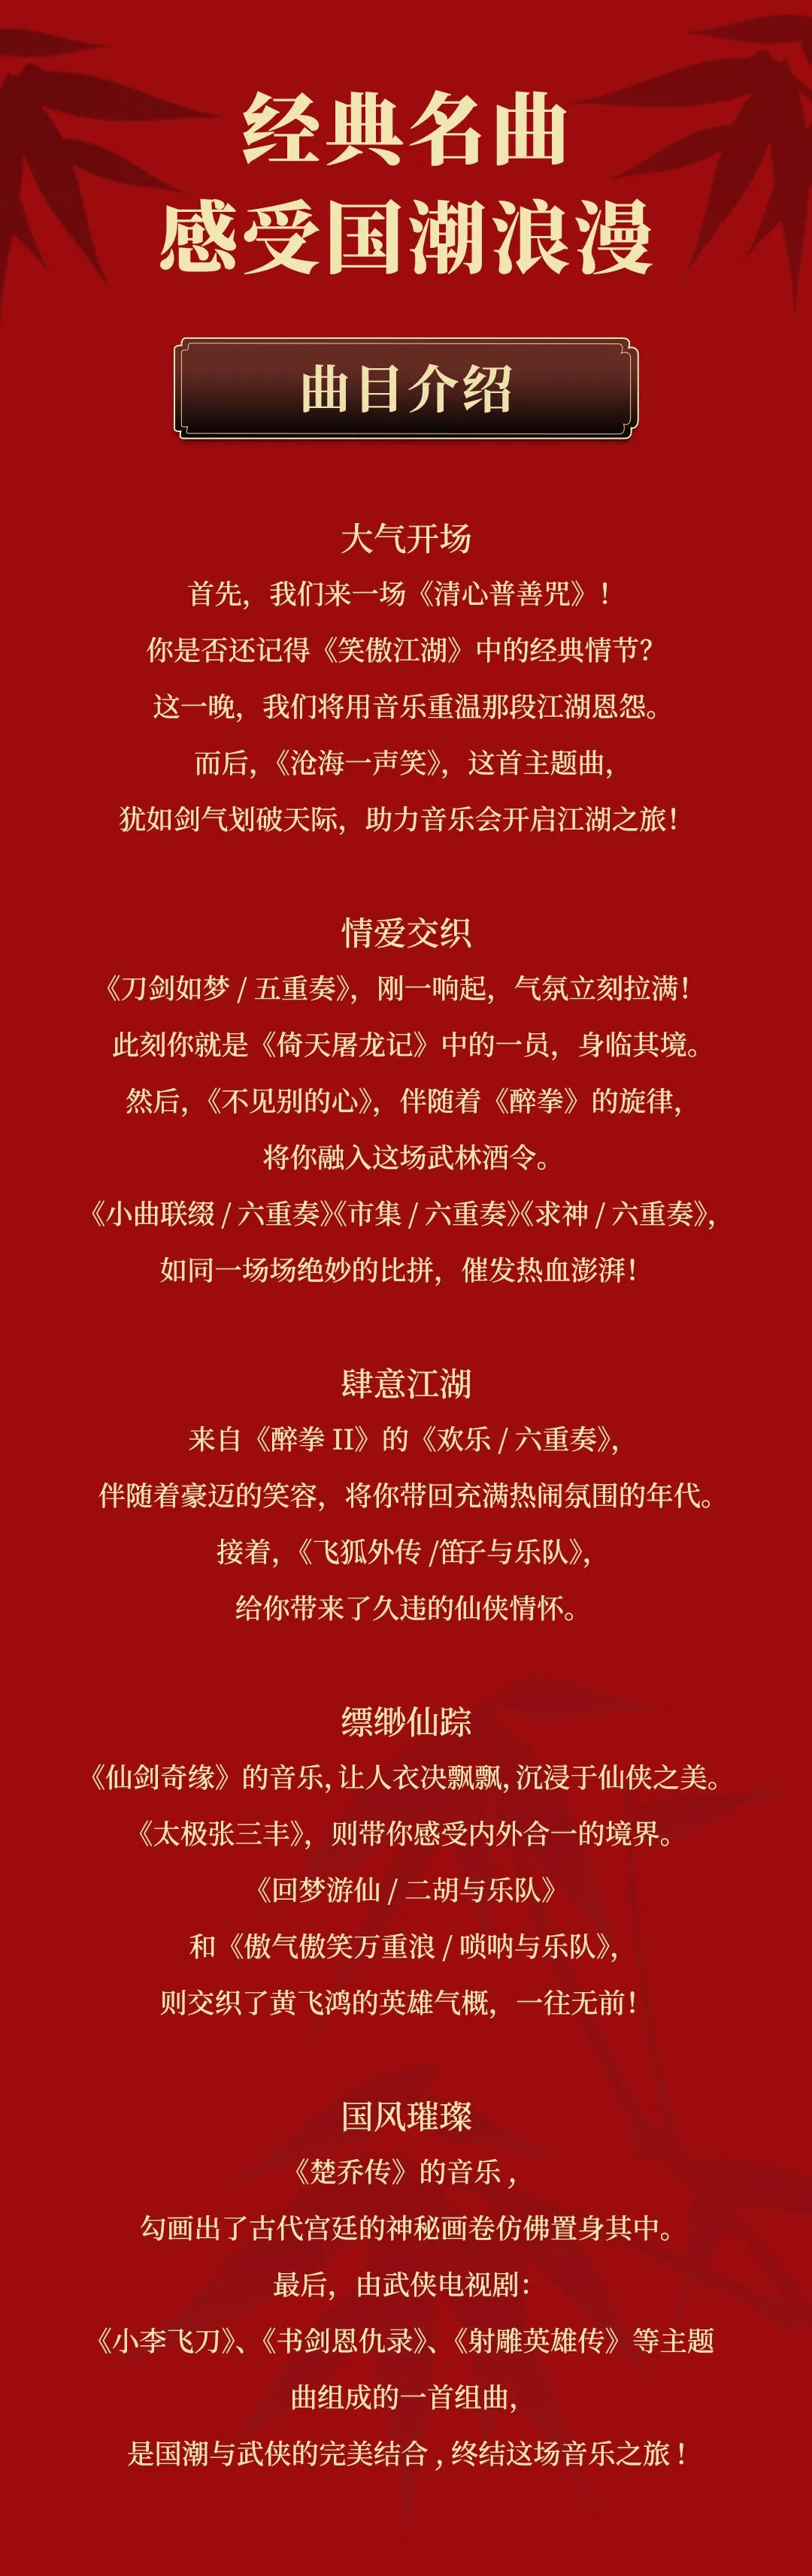 【珠海站】笑傲江湖——纪念金庸先生诞辰100周年·经典武侠专题音乐会